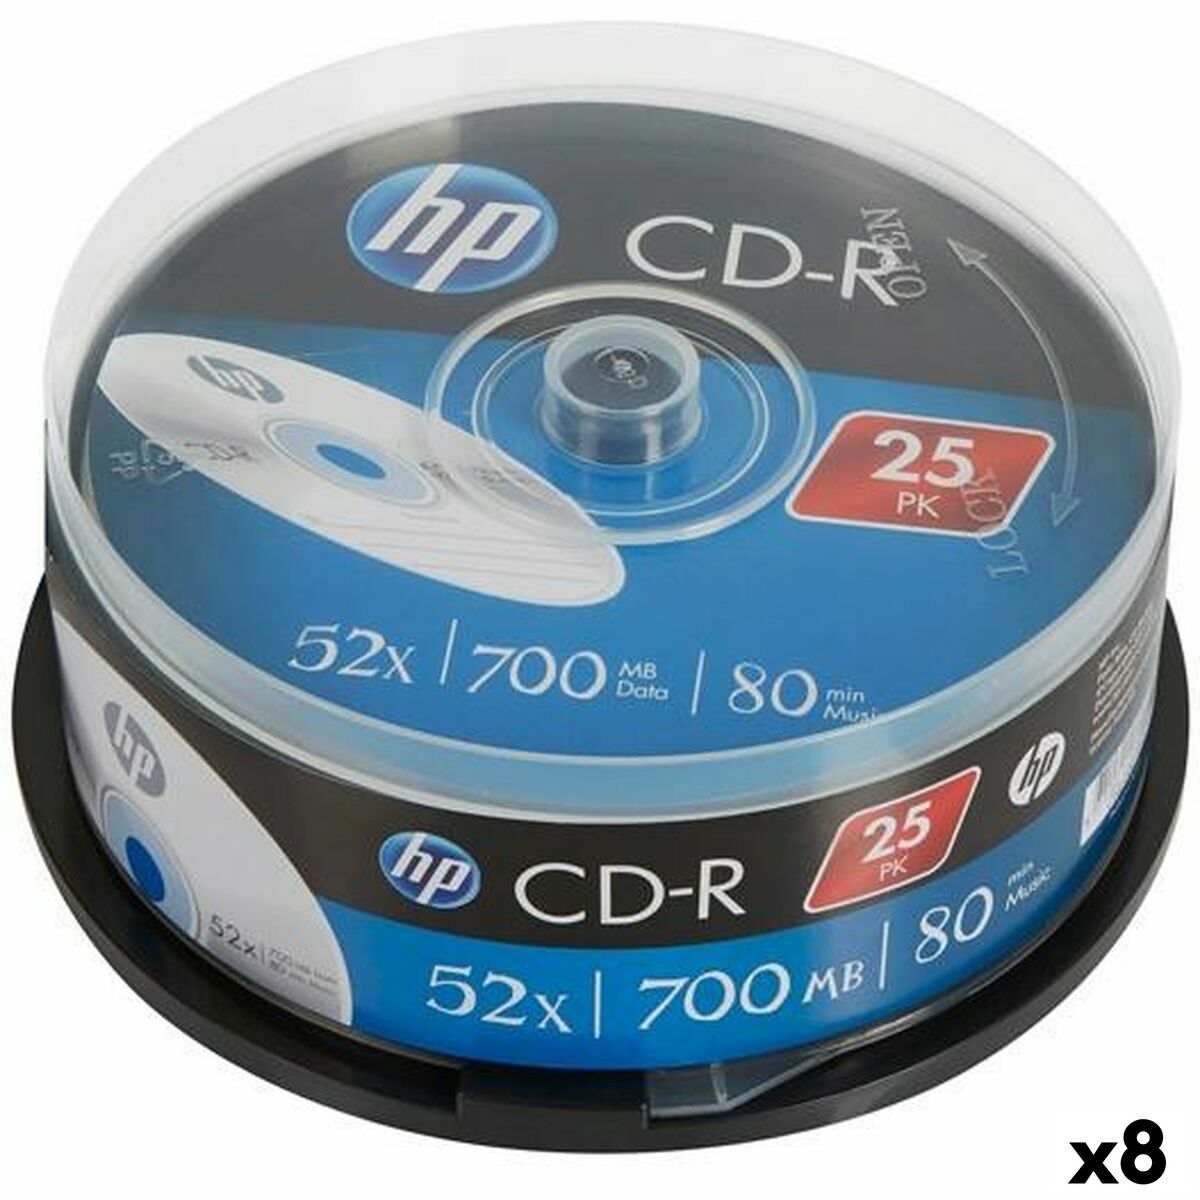 CD-R HP 700 MB 52x (8 Unités)